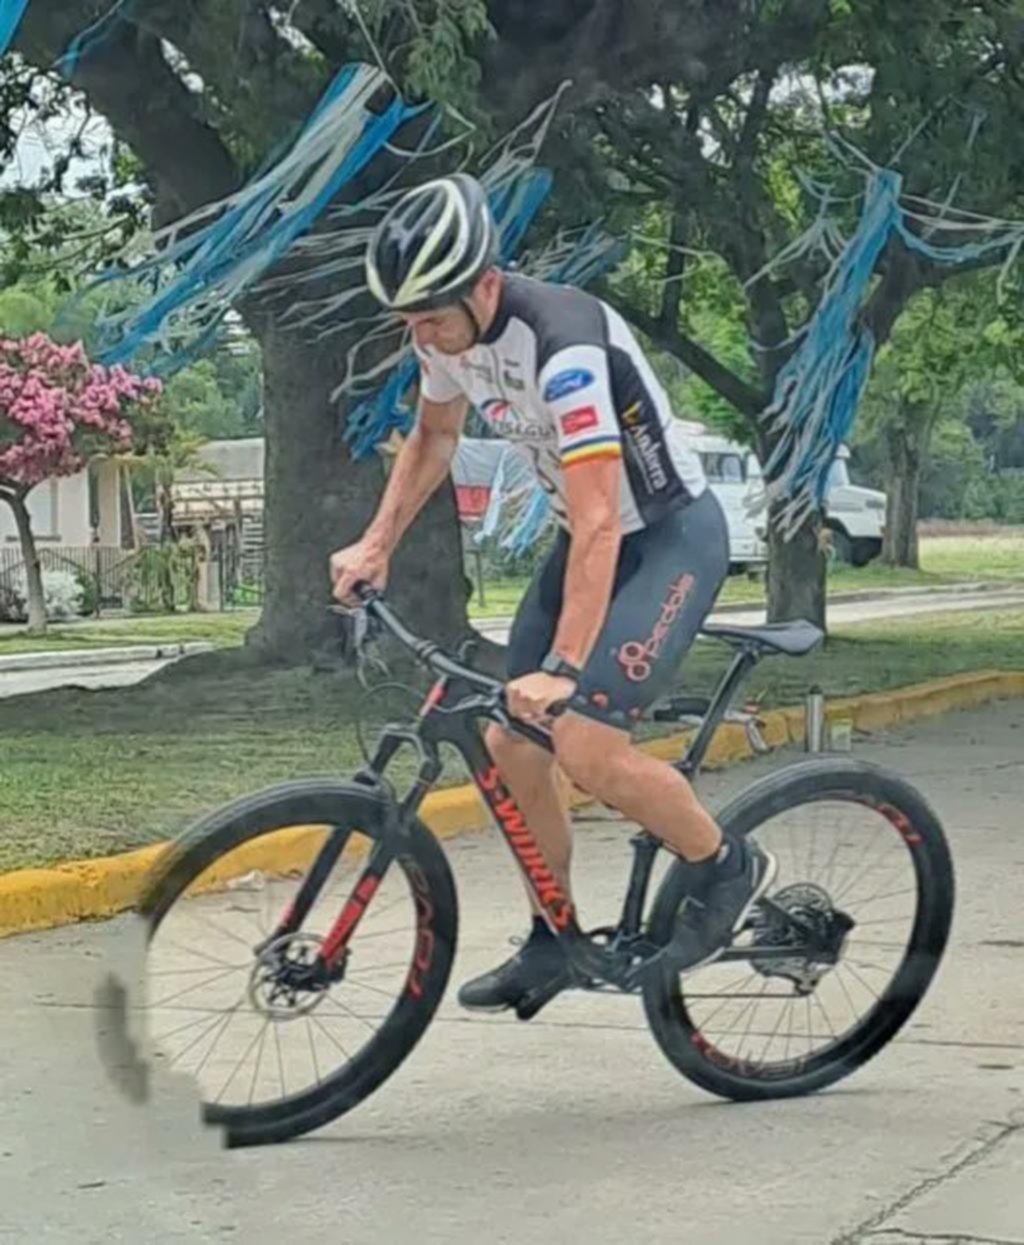 Scaloni recorrió las calles de Pujato en bici, su otra pasión